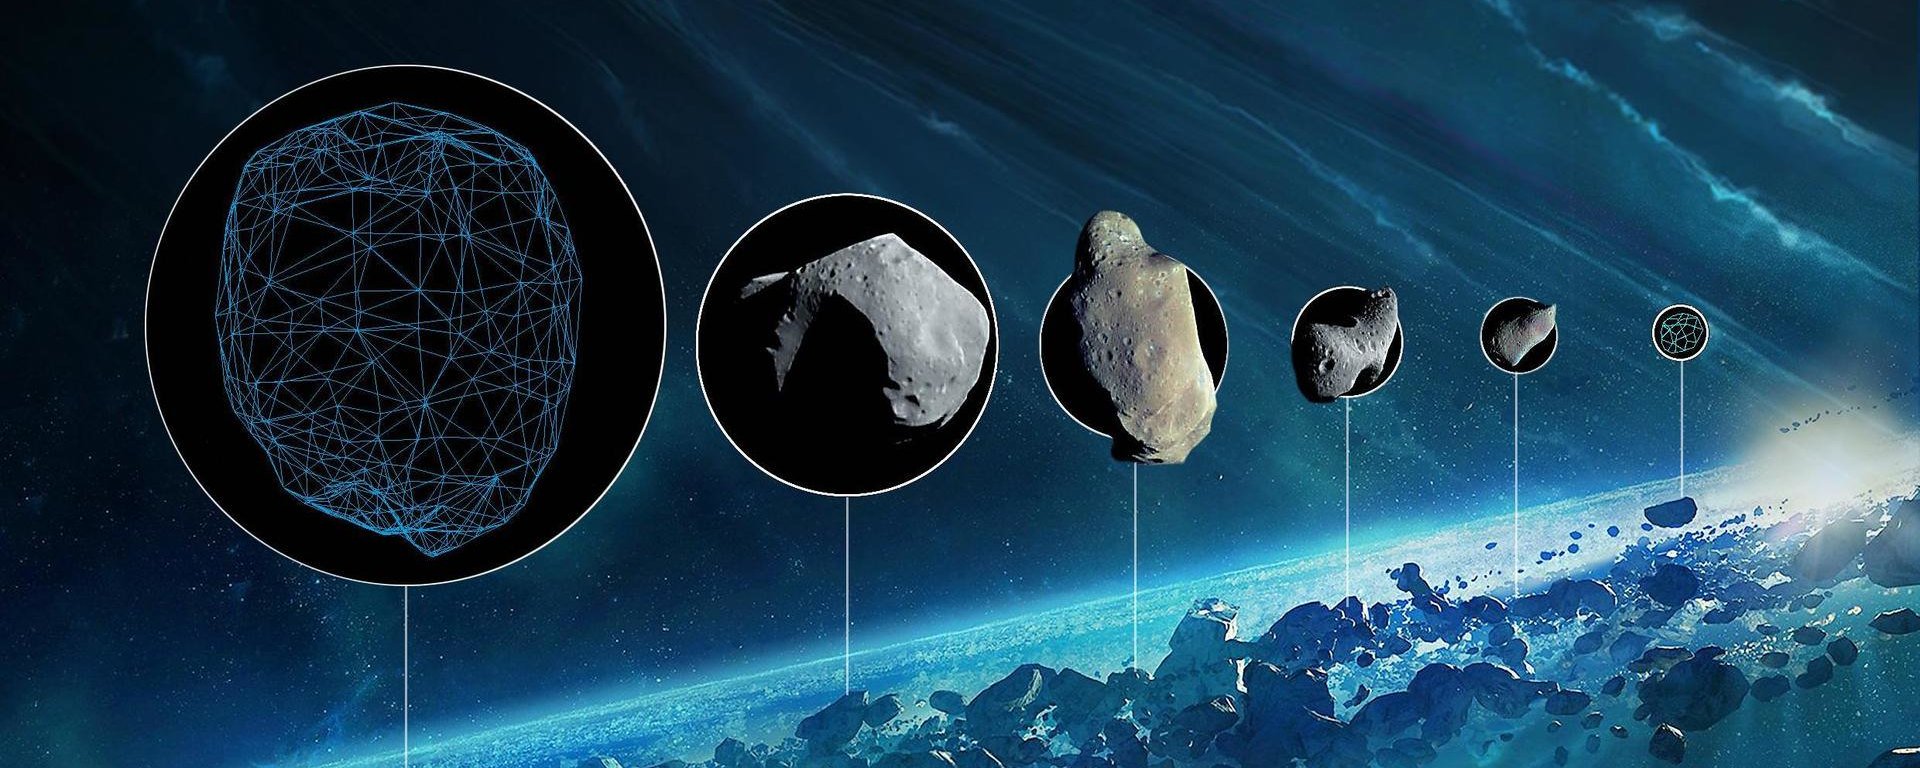 Eksperiment med en pistol, viste sig at asteroider kunne have bragt vand til Jorden